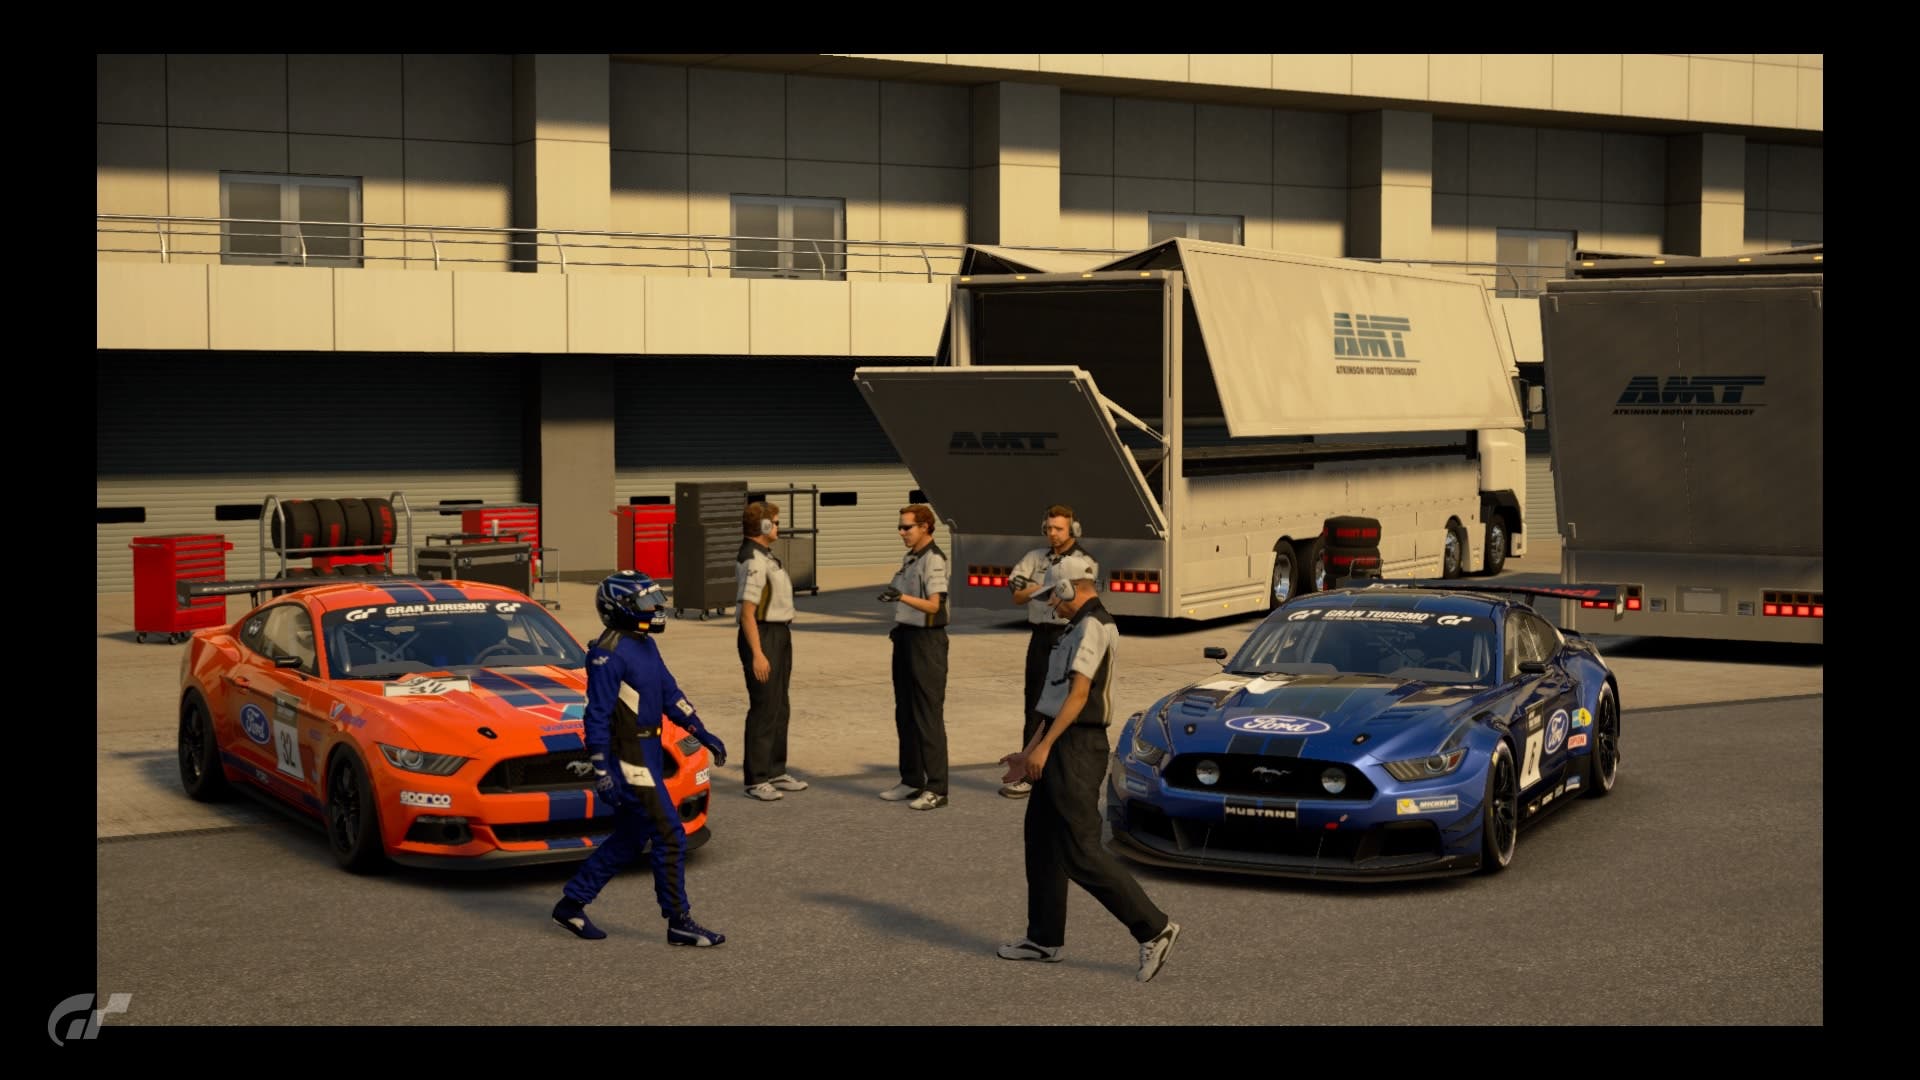 Gran Turismo 7' presume sus novedades en un espectacular gameplay